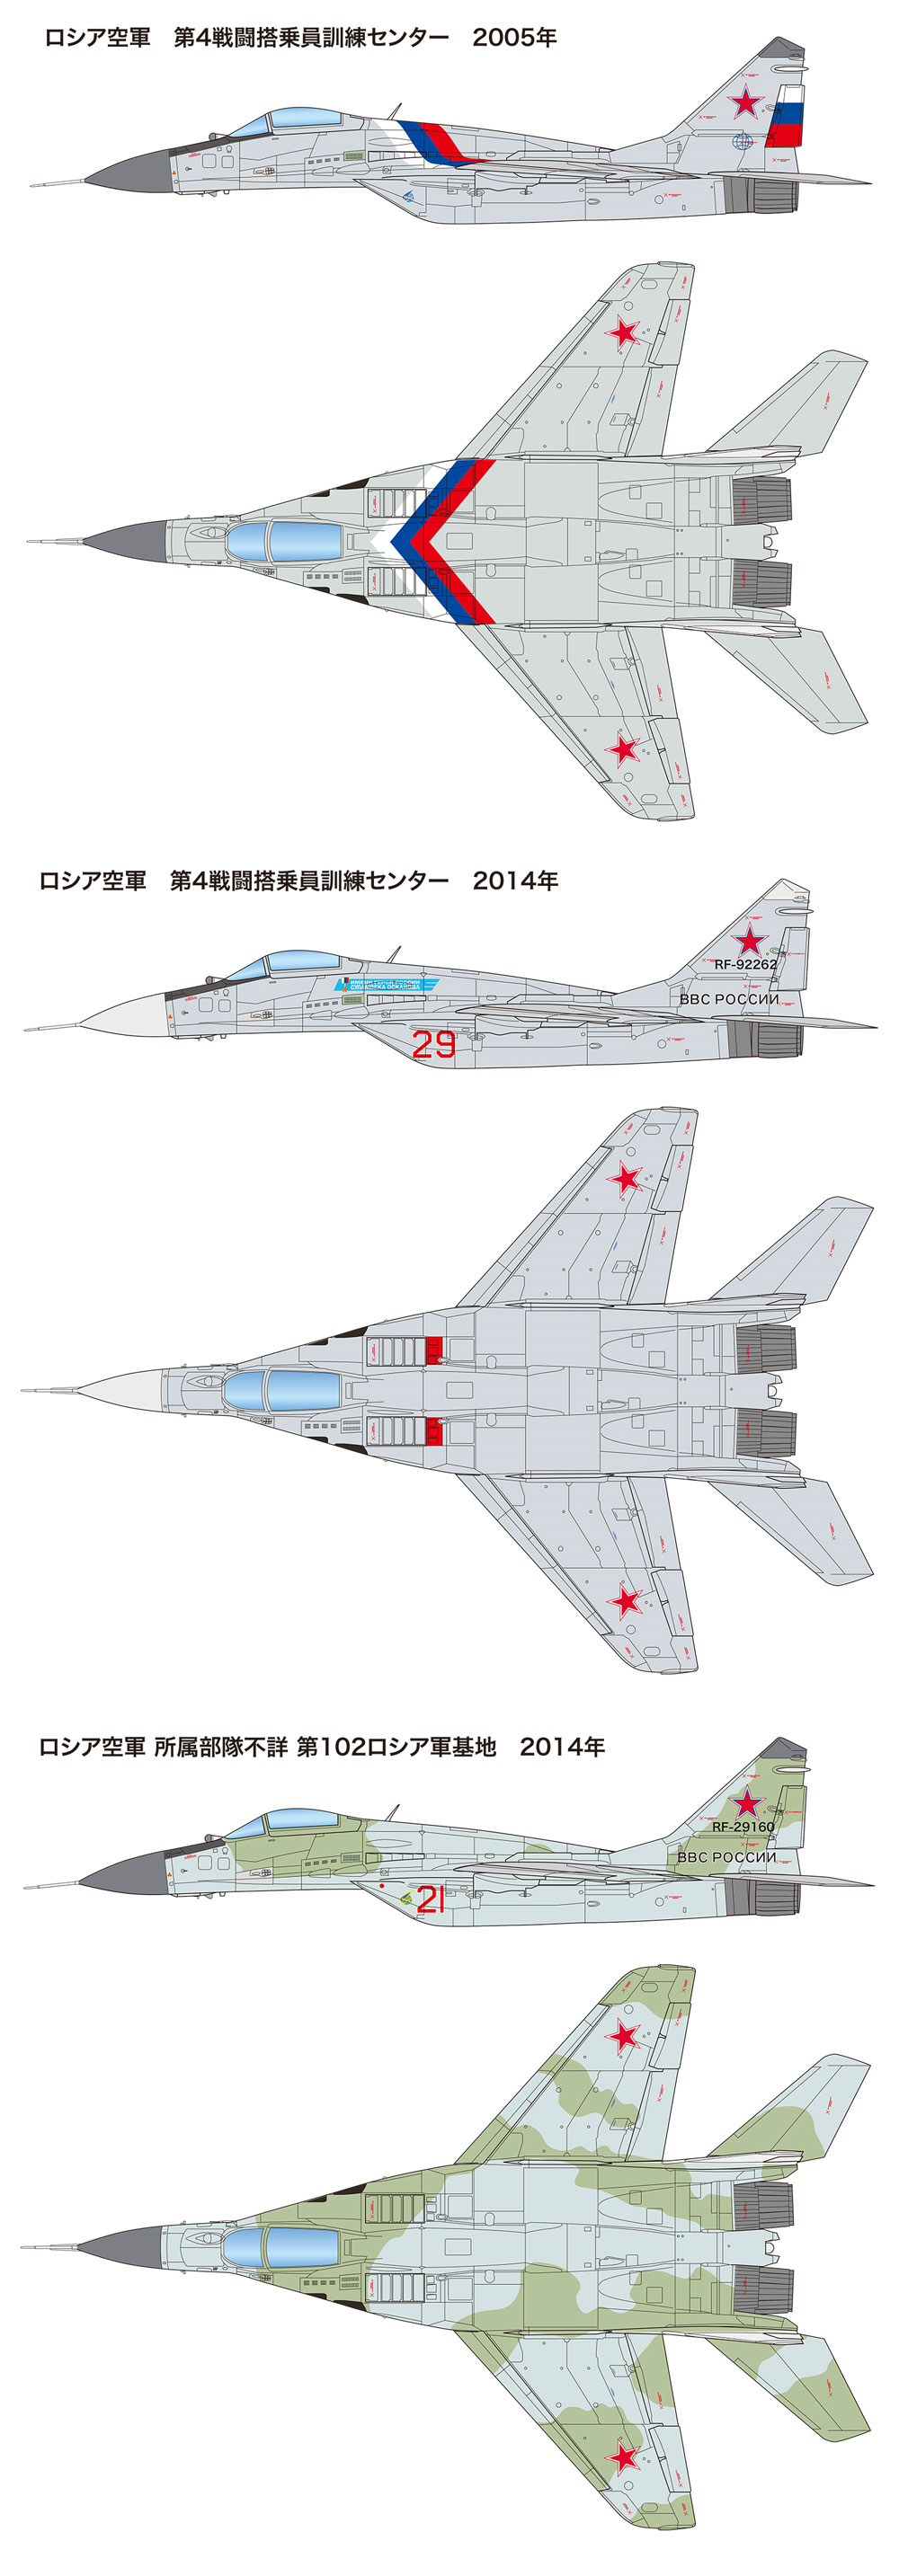 MiG-29 (9.13) フルクラム C トップガン プラモデル (プラッツ 航空模型特選シリーズ No.AE-011) 商品画像_2